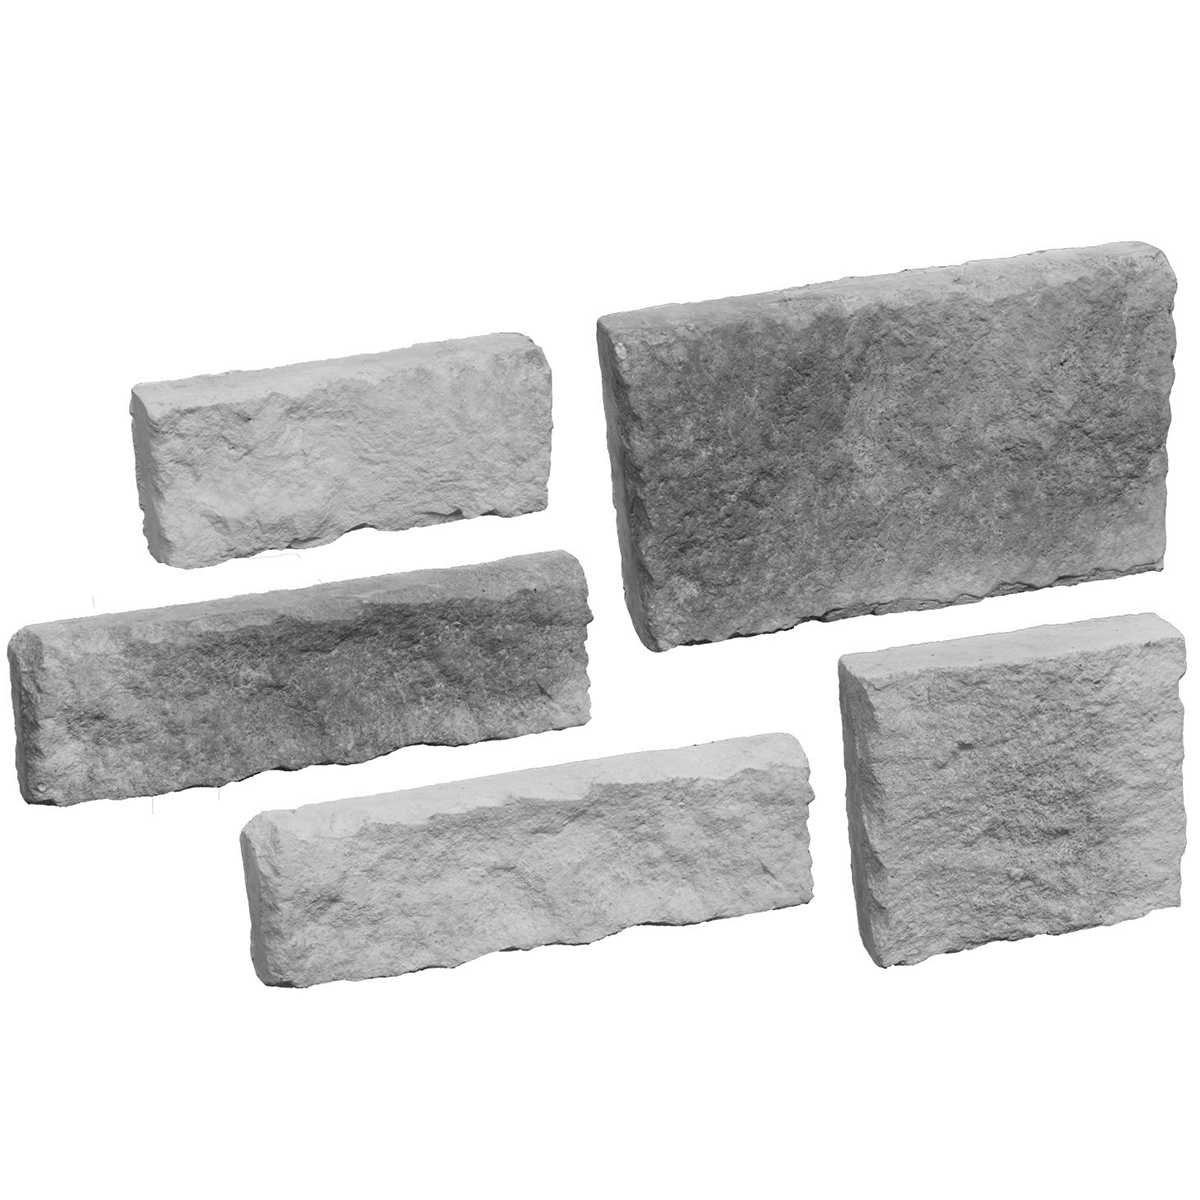 Foto de revestimento de pedra de imitação de cinza do Colorado 